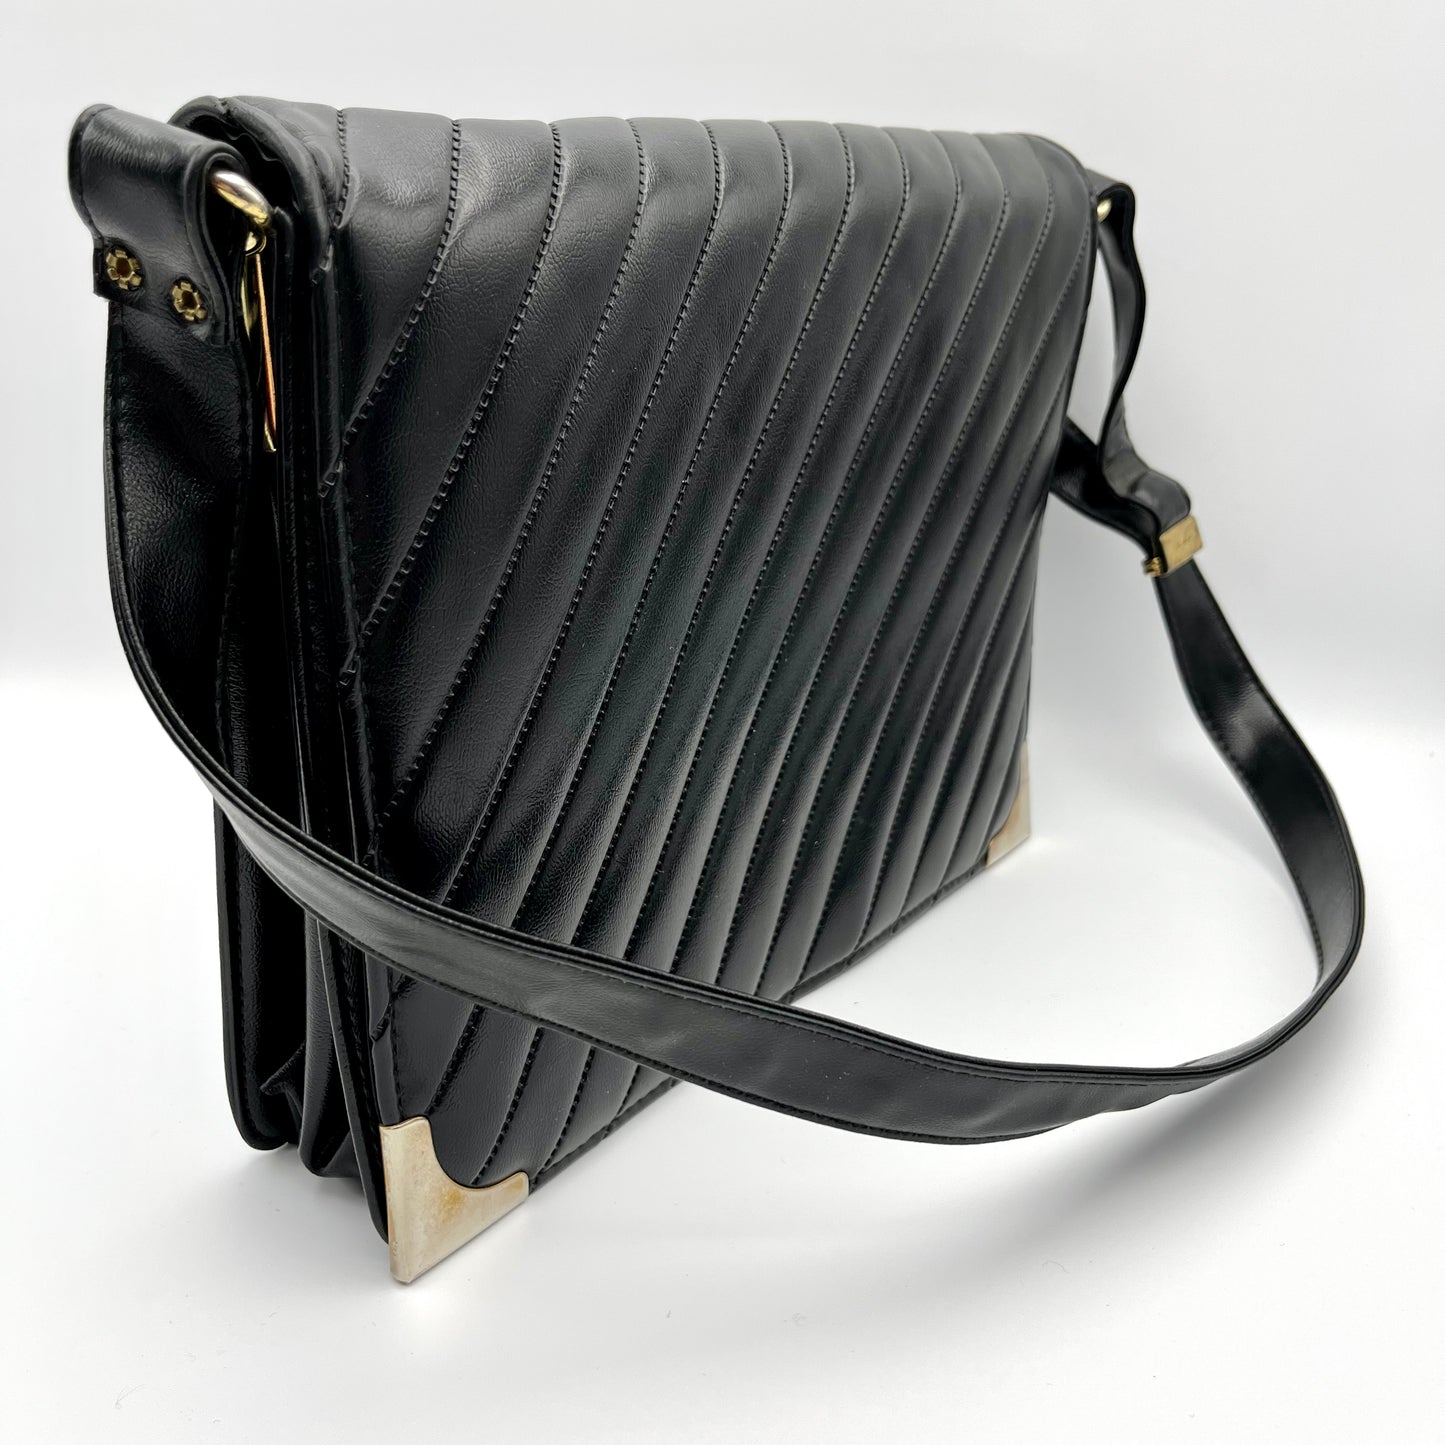 1960s Black Shoulder Bag With Adjustable Strap